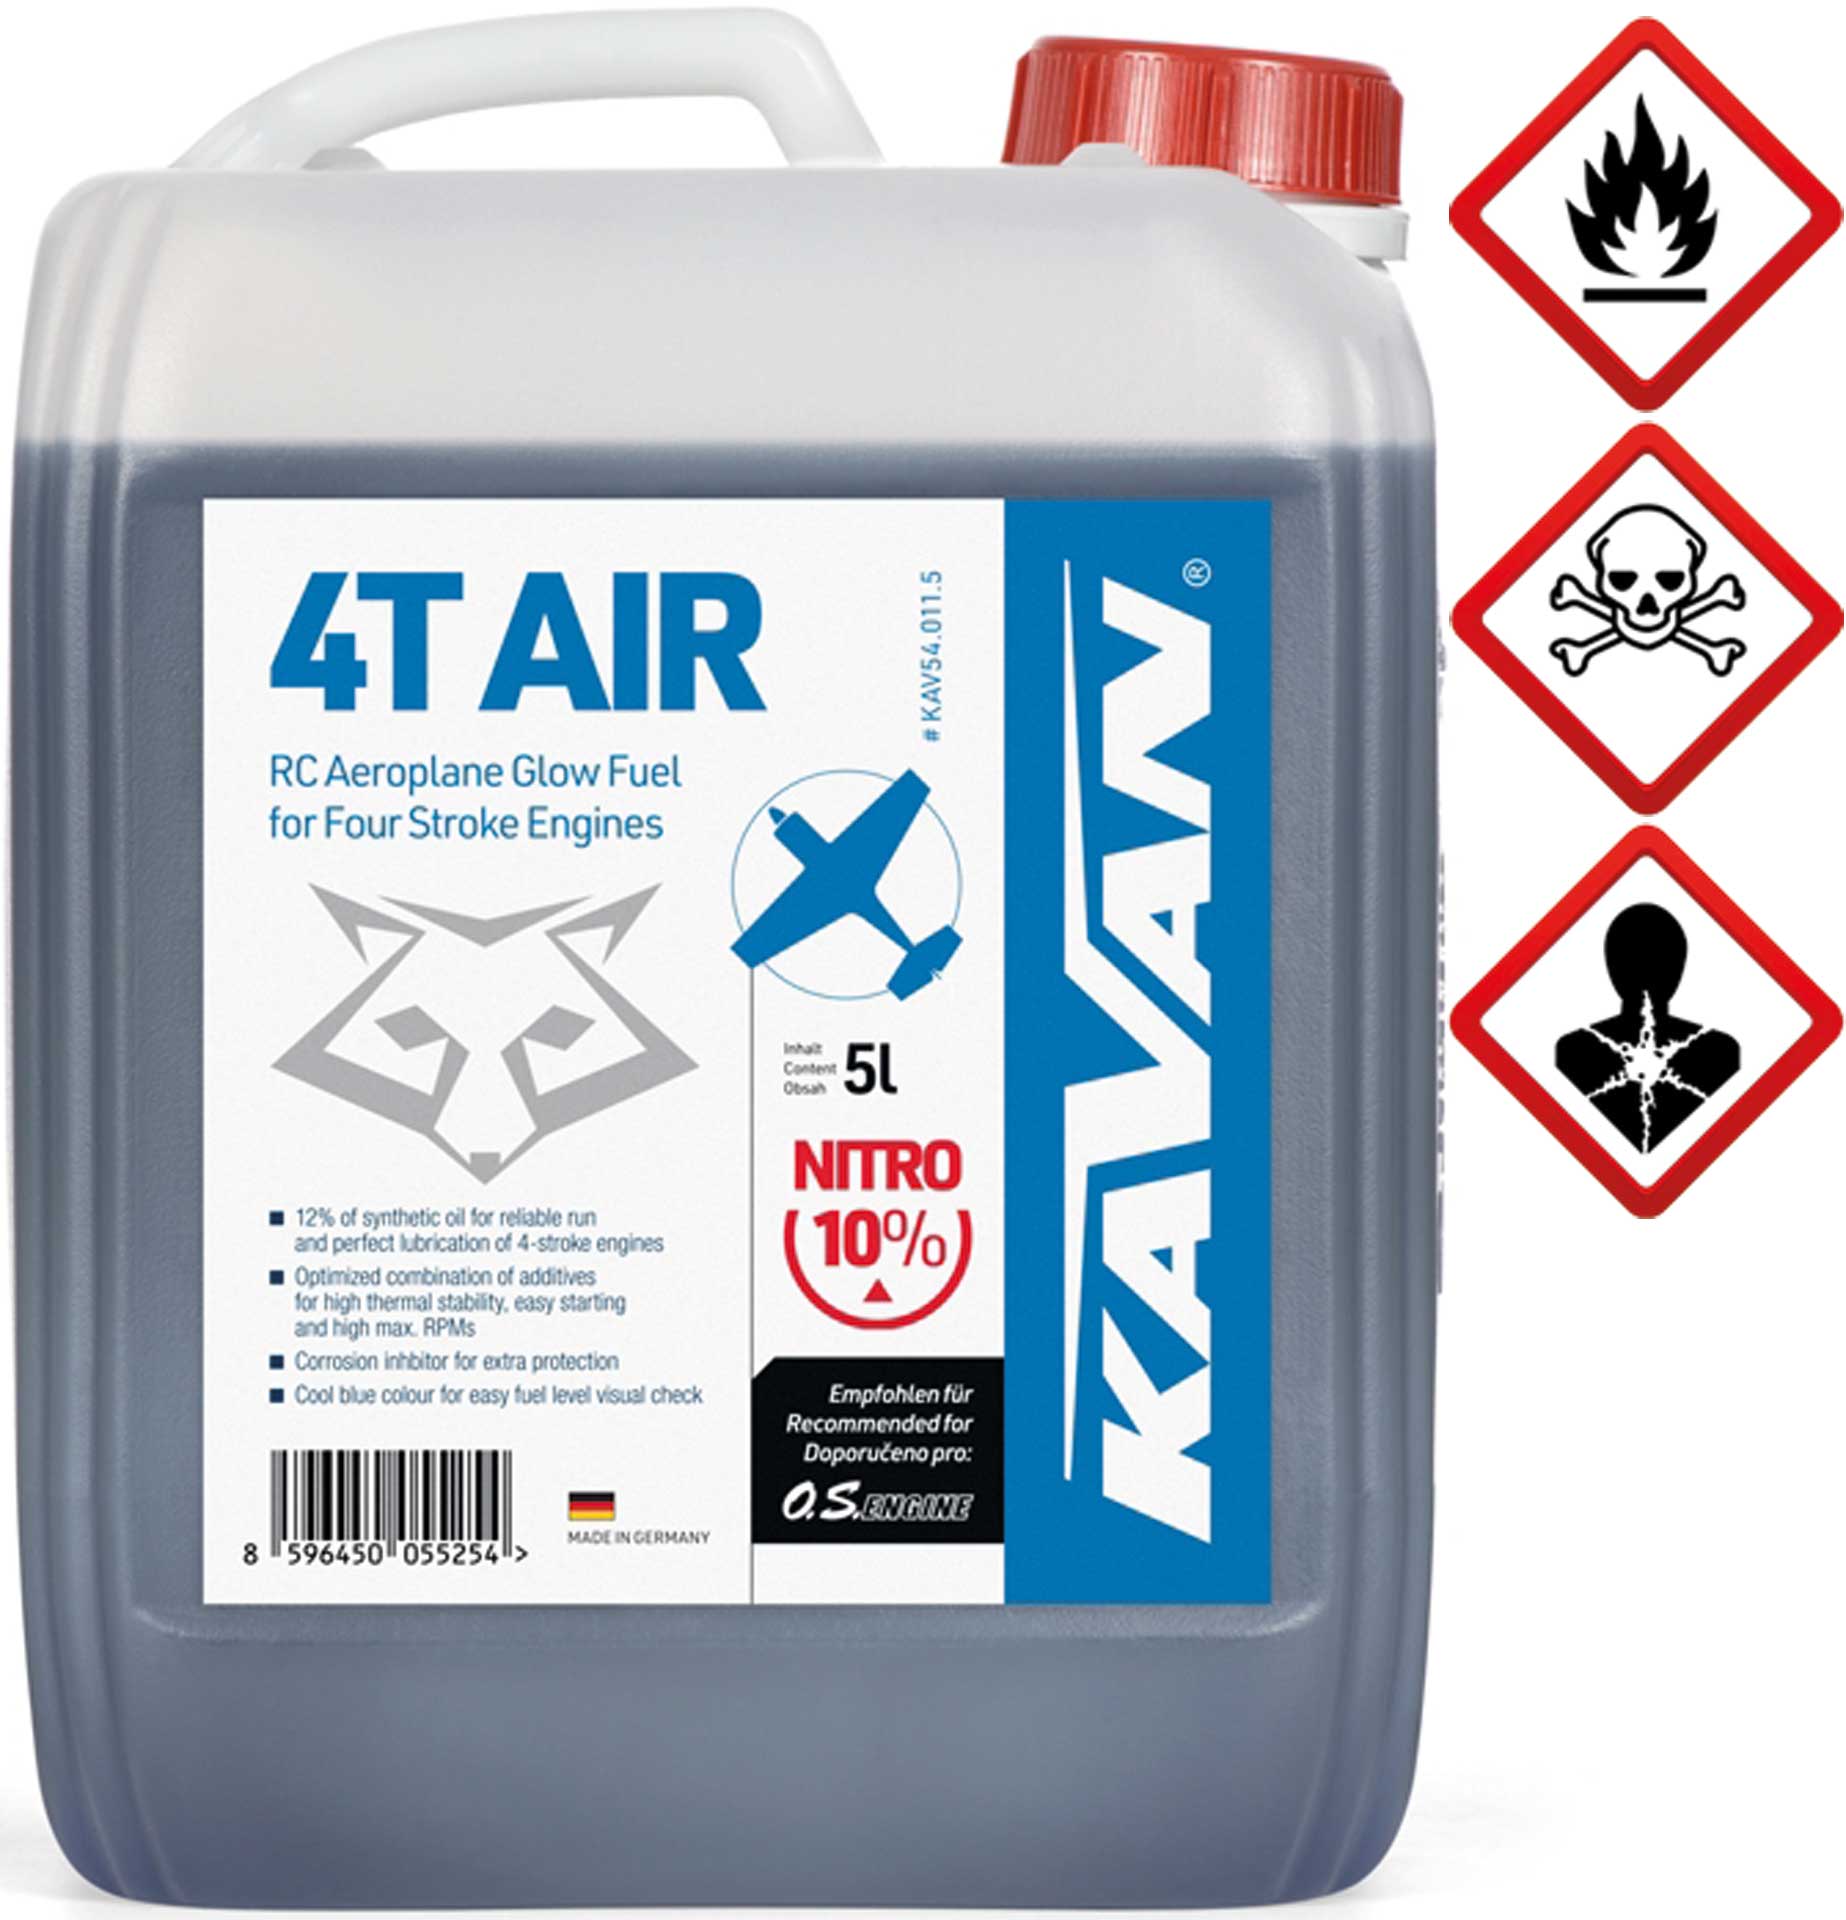 KAVAN 4T Air 10% nitro 5 litres de carburant, Essence, carburant pour moteurs à allumage par incandescence